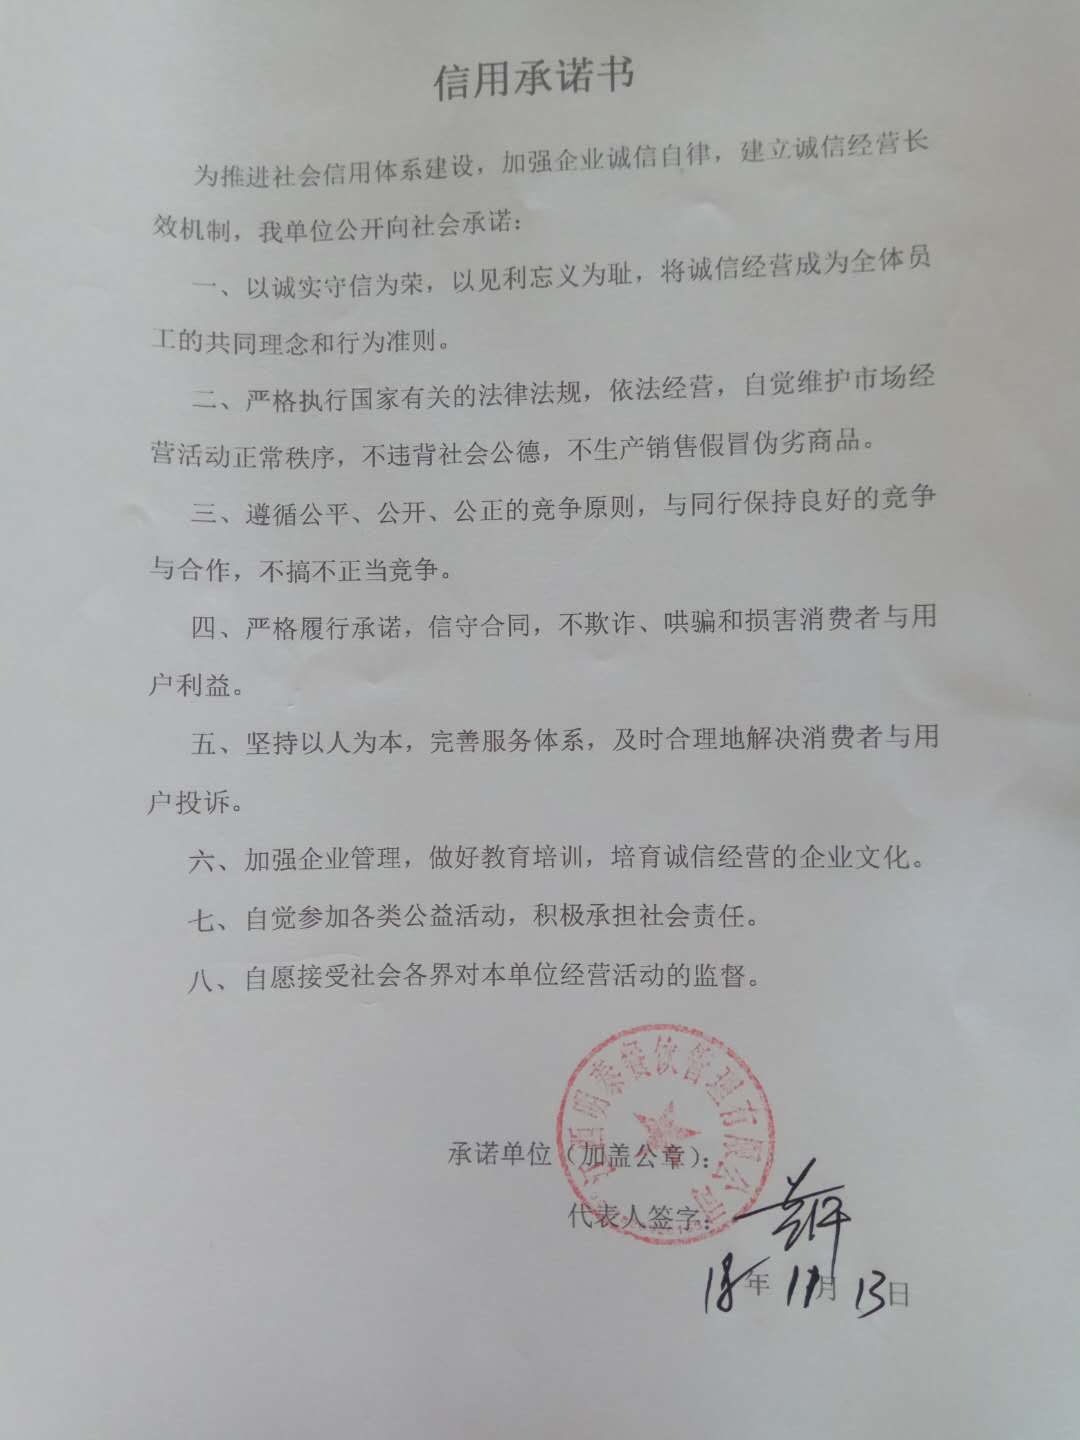 江西明泰餐饮管理有限公司签署企业信用承诺书